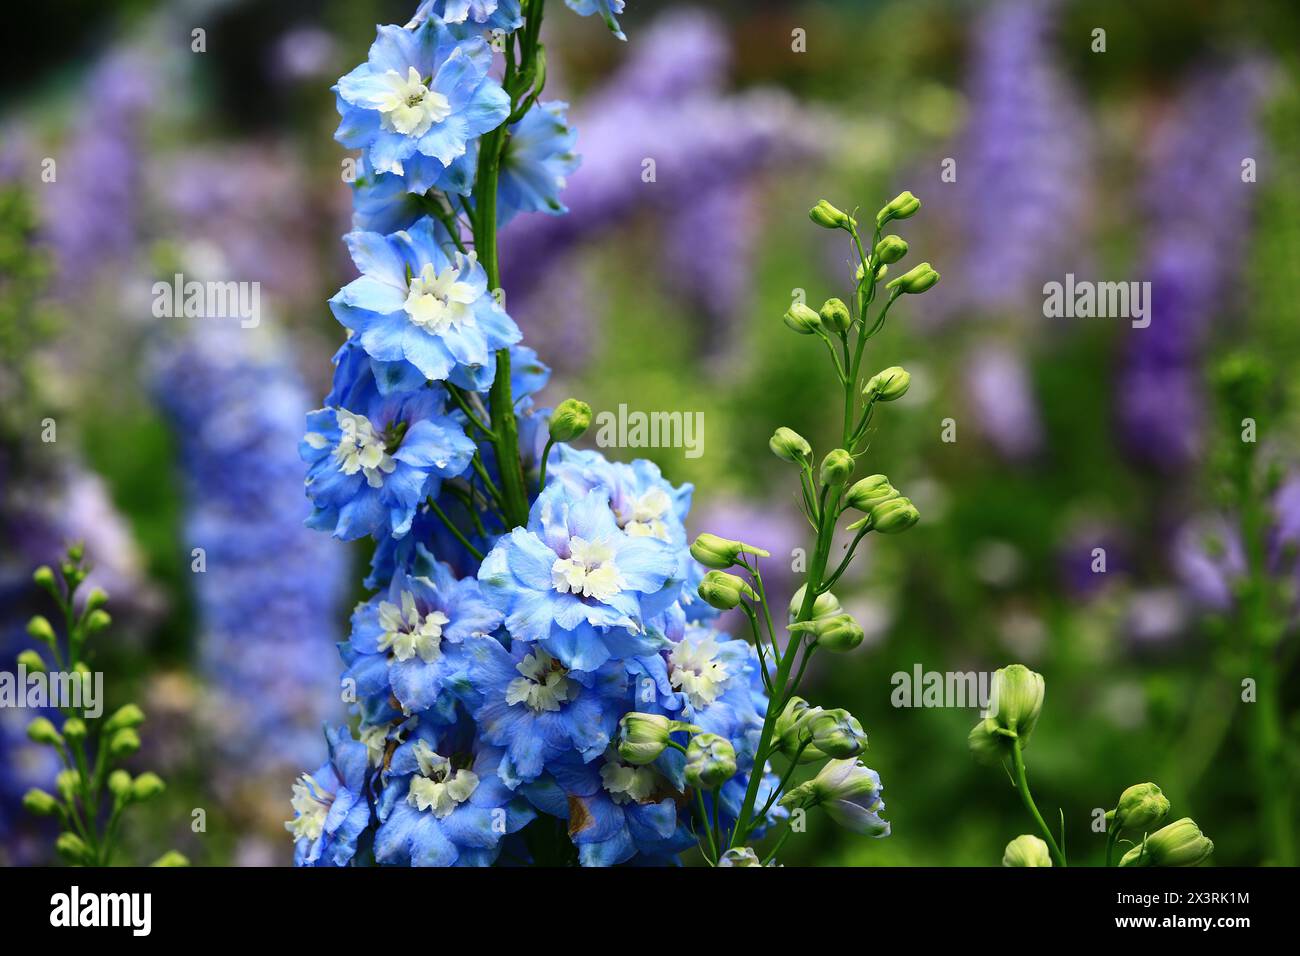 Colorato Delphinium o Candle Delphinium o inglese Larkspur o Tall Larkspur fiori fioriti nel giardino Foto Stock